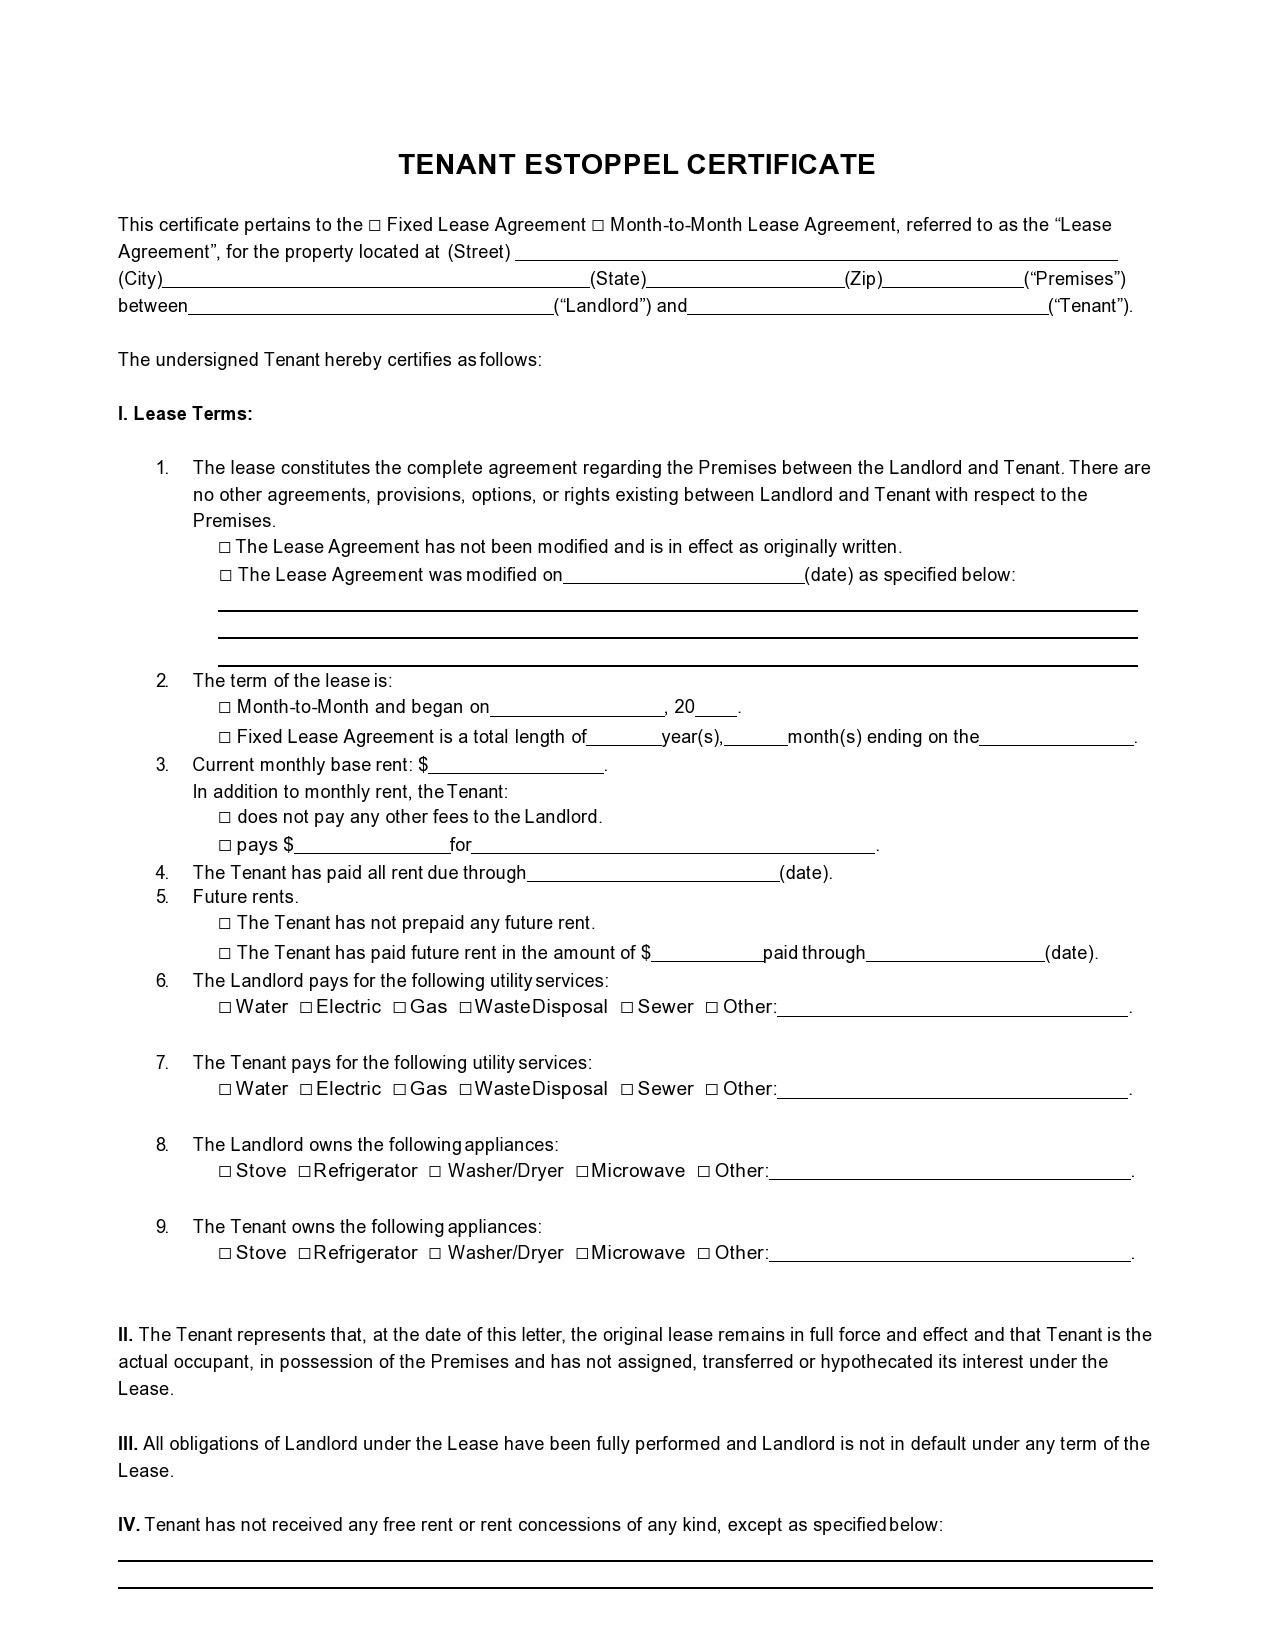 Free estoppel certificate form 36